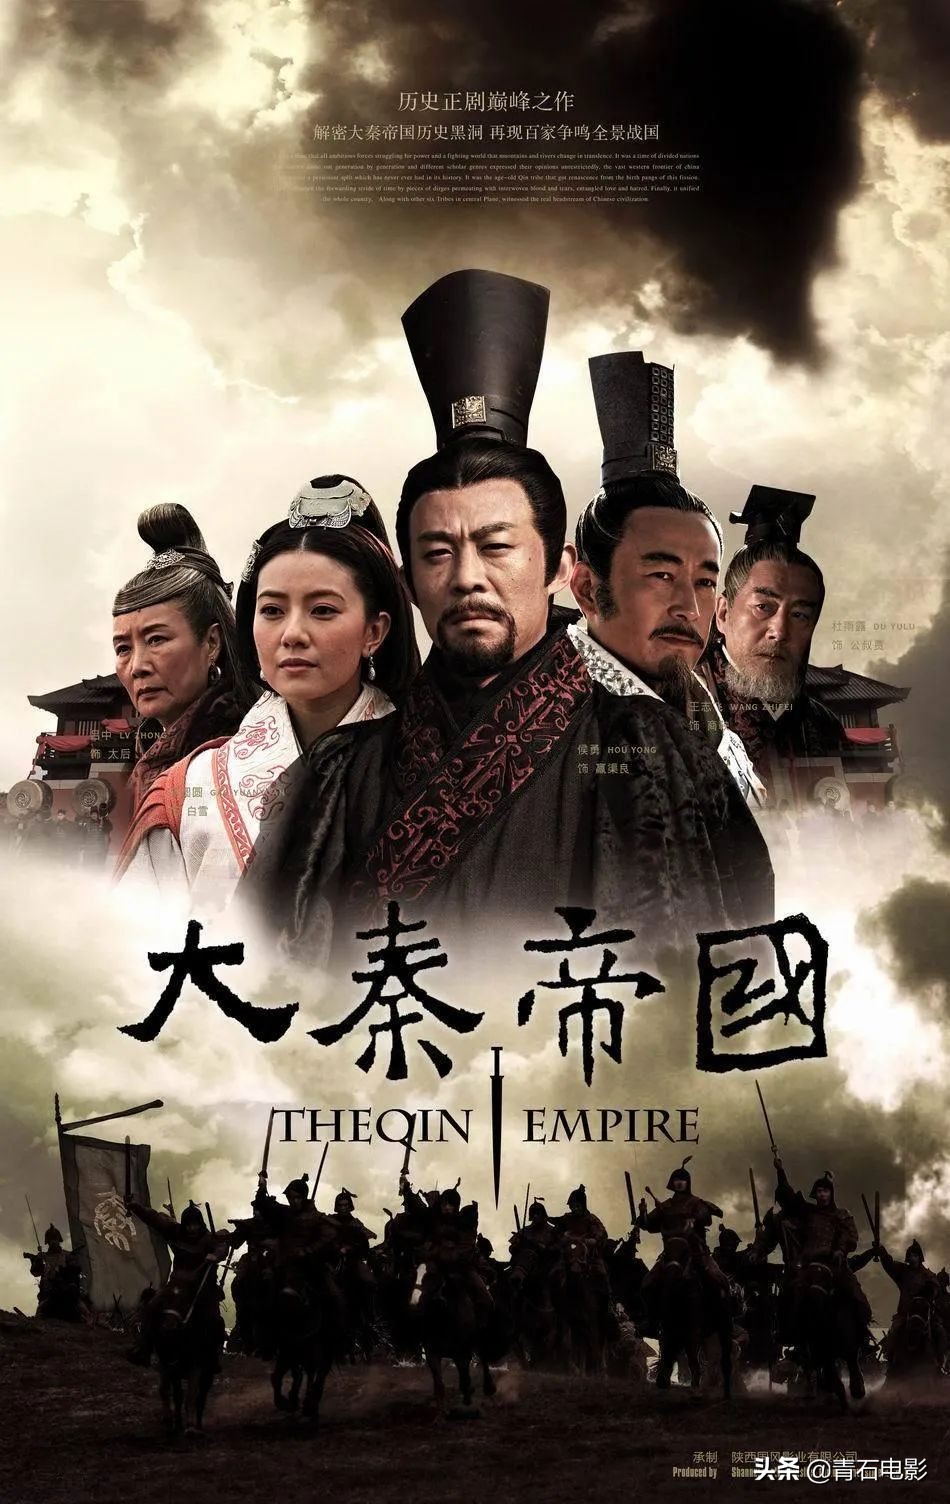 《大秦帝国》系列是国产历史剧的一个经典ip,其中第一部《大秦帝国之